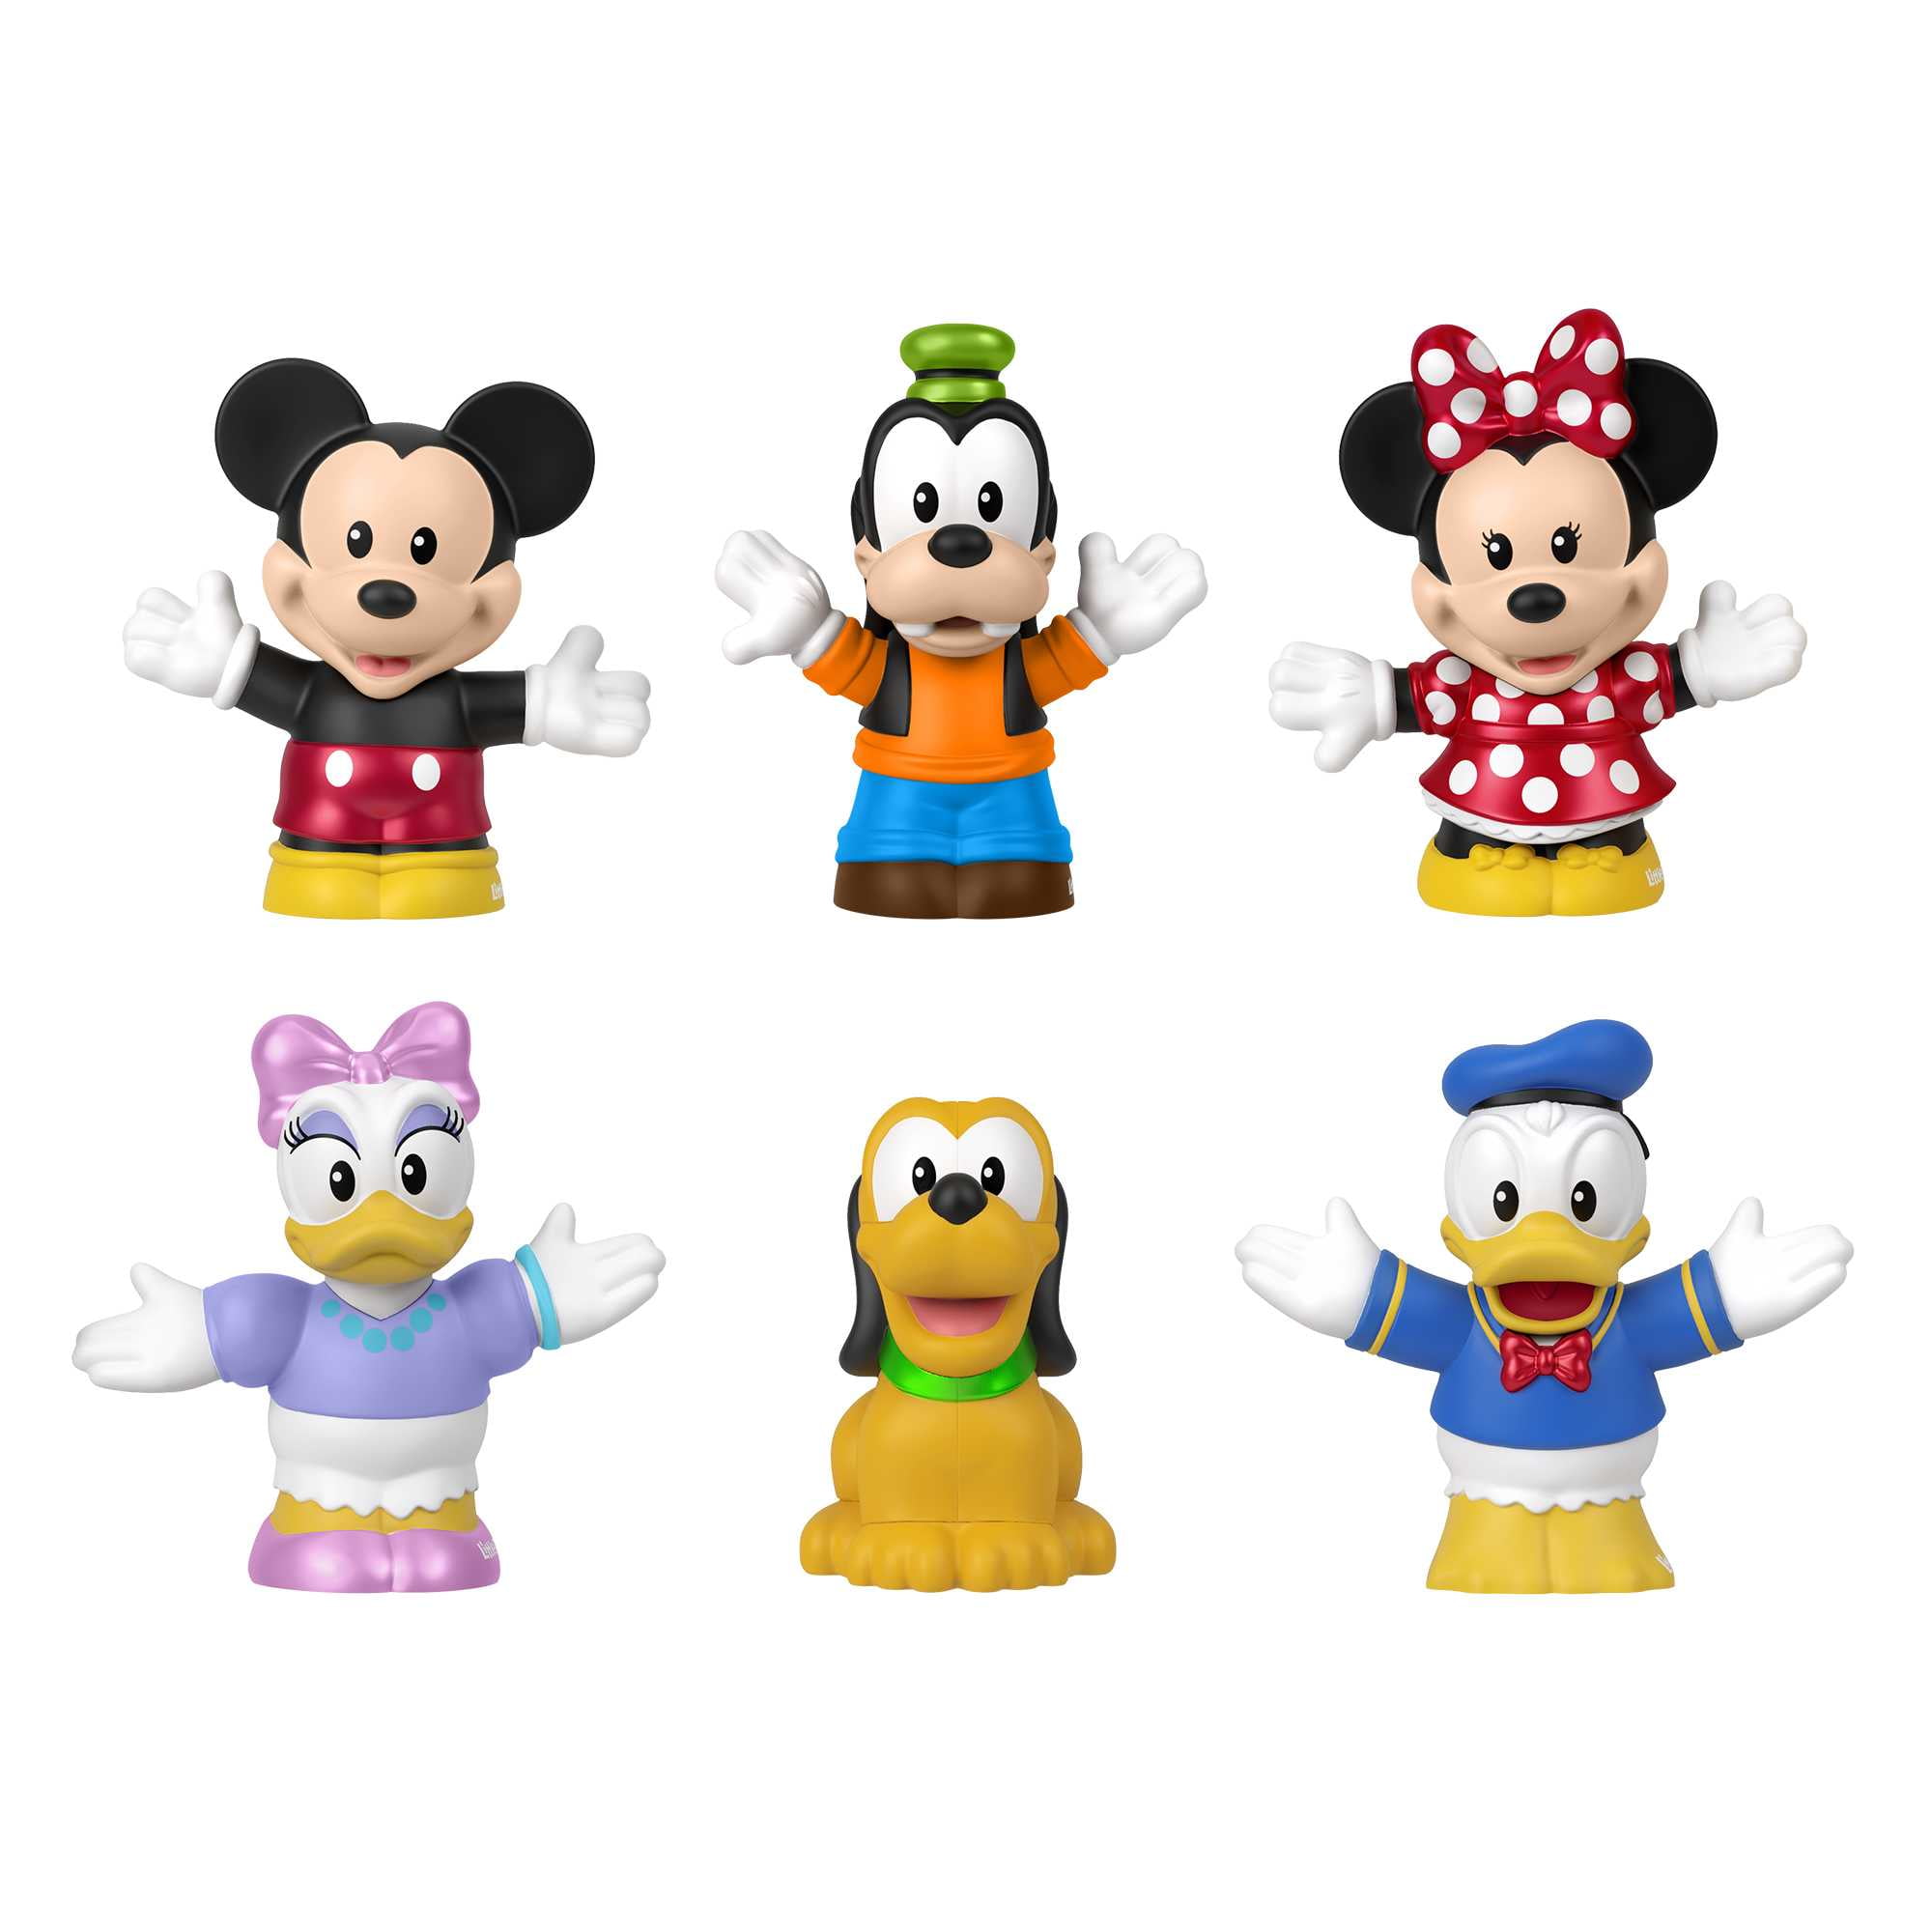 Disney 30 Pc. Classic Figurines